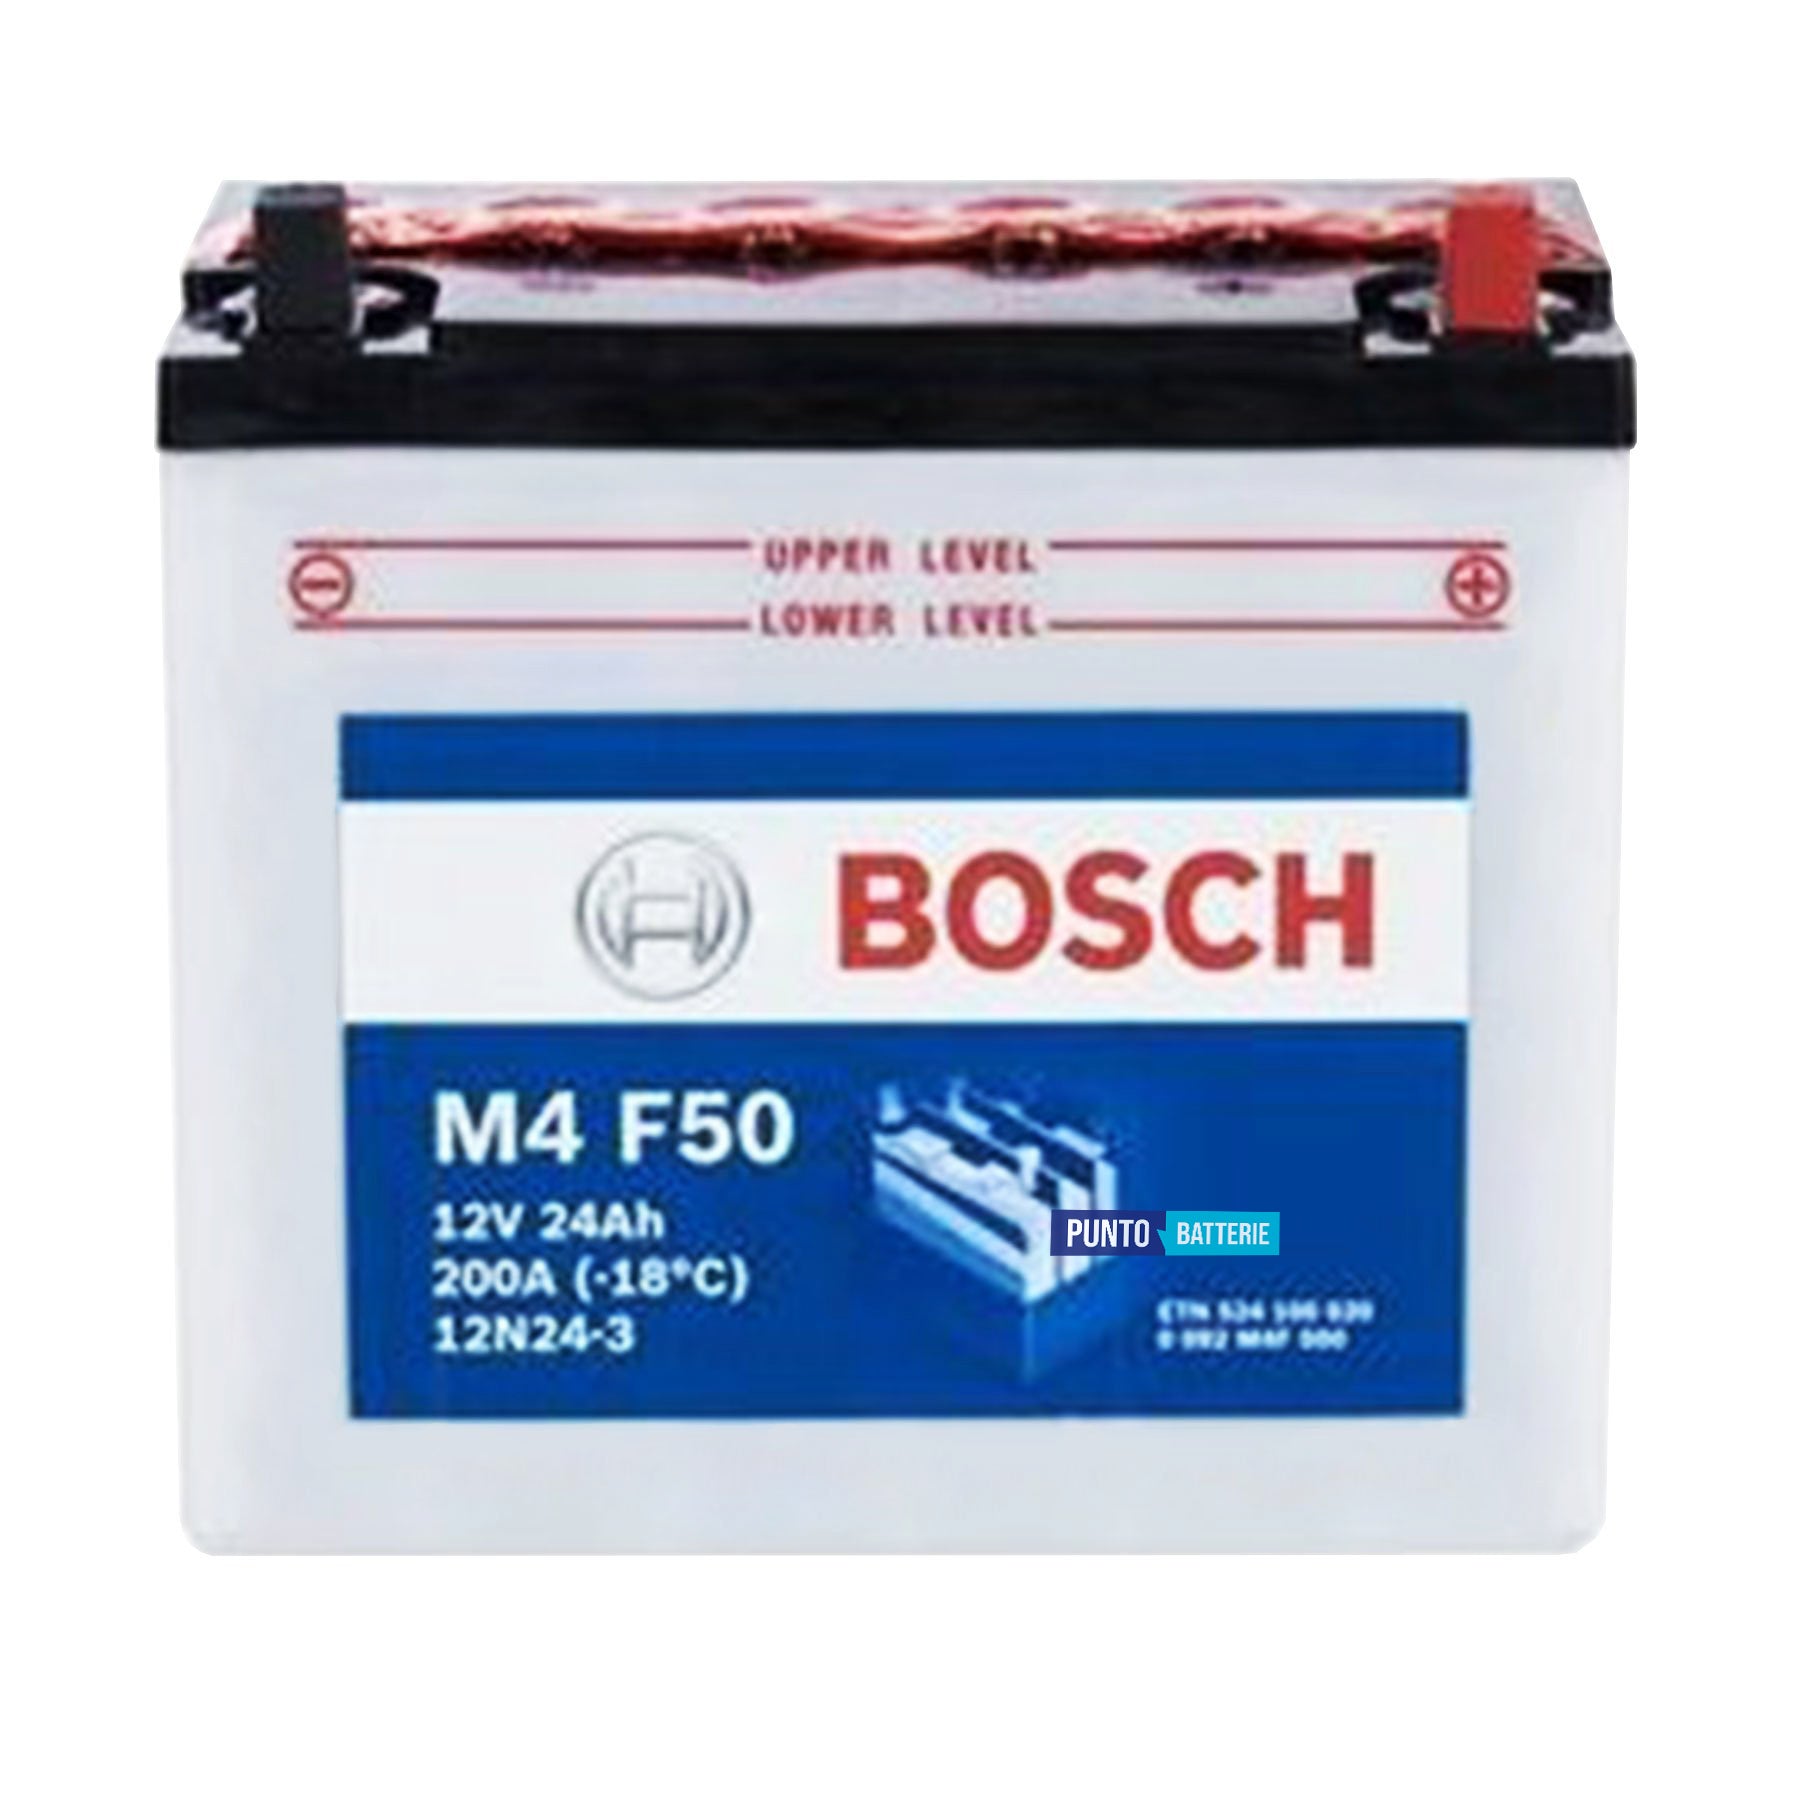 Batteria originale Bosch M4 M4F50, dimensioni 184 x 124 x 175, polo positivo a destra, 12 volt, 24 amperora, 200 ampere. Batteria per moto, scooter e powersport.